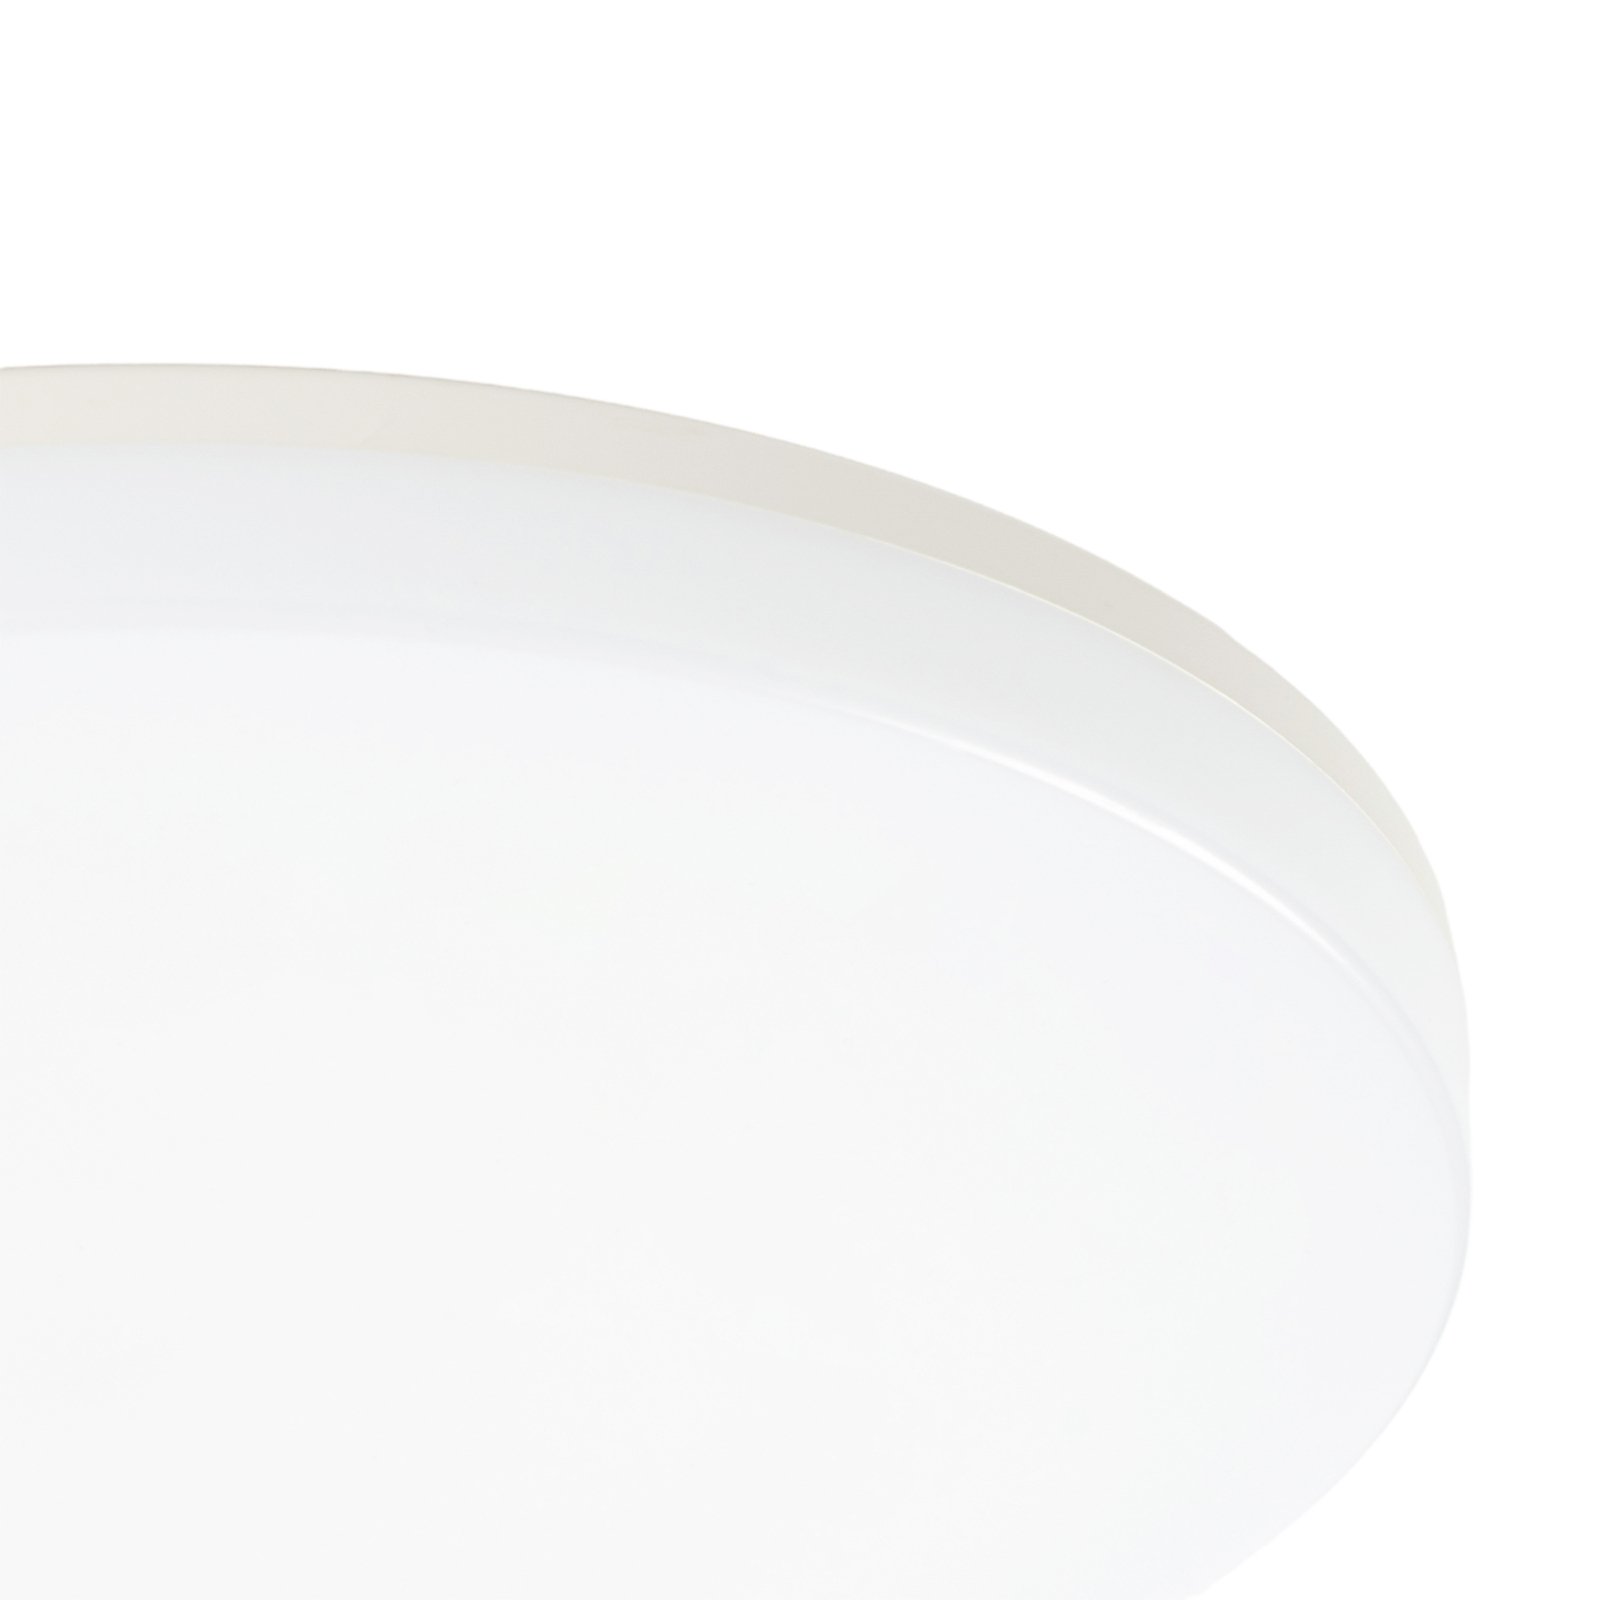 Prios Artin LED ceiling lamp, round, 28 cm